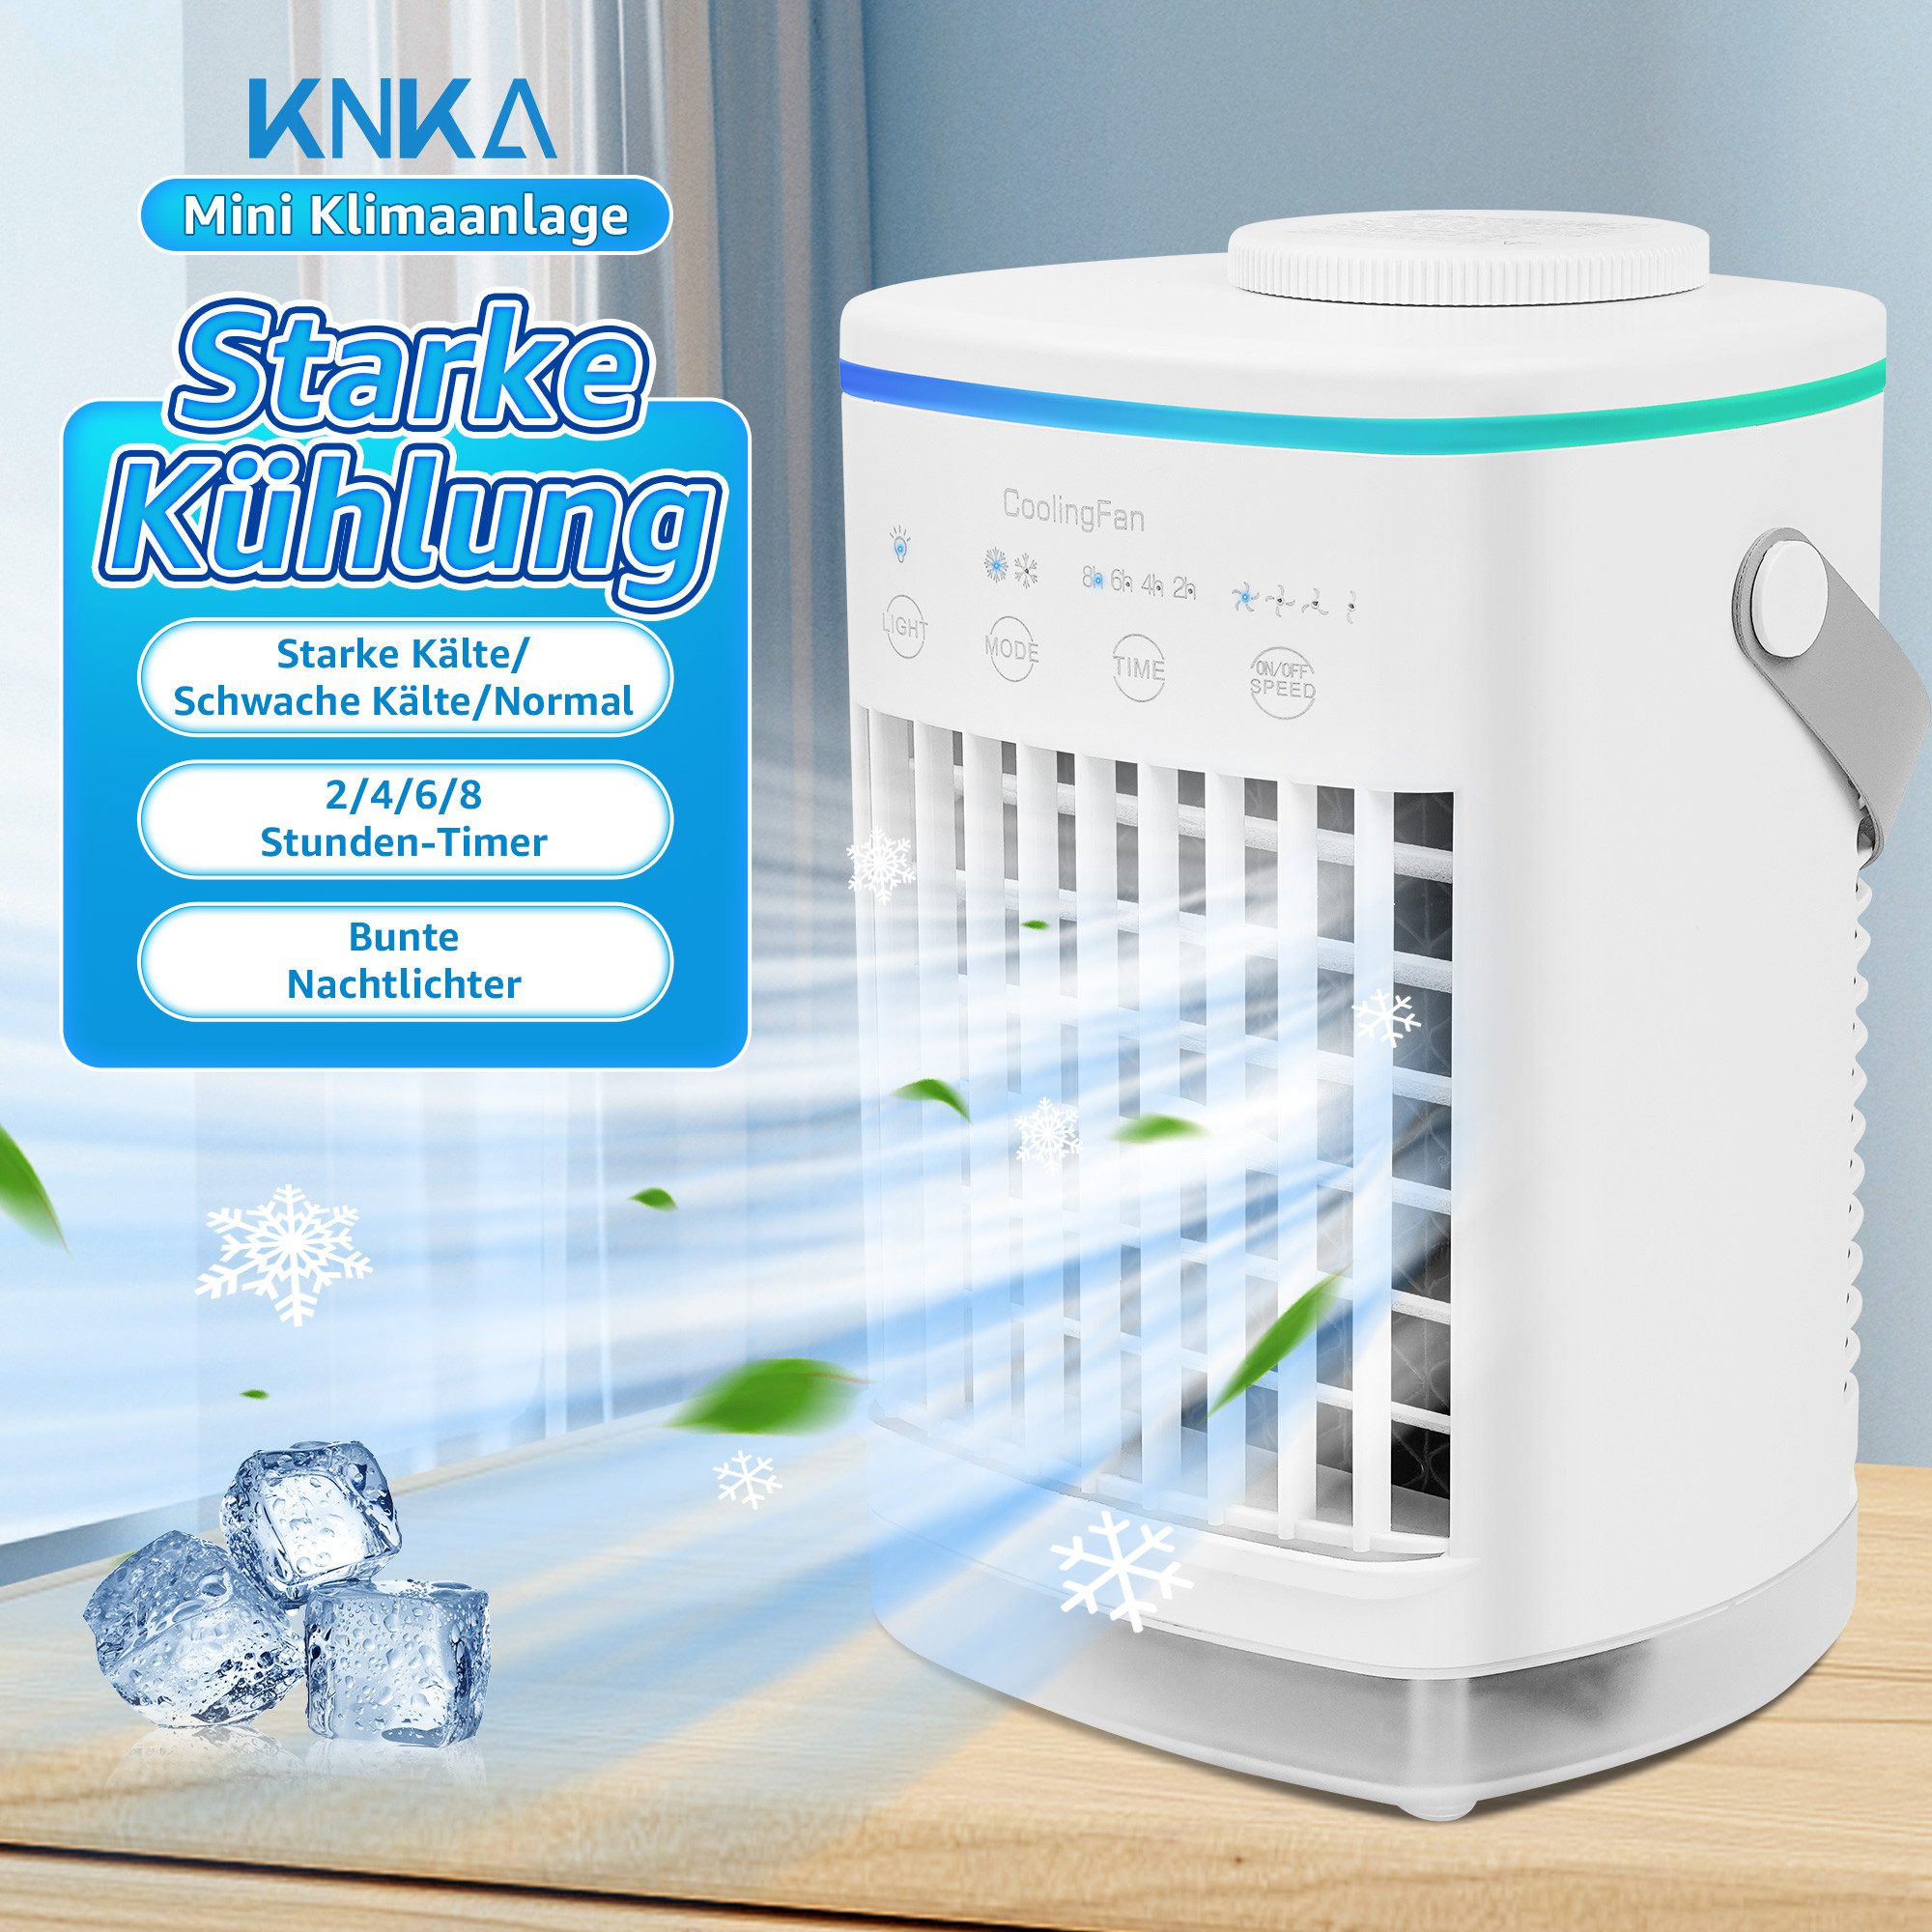 KNKA Ventilatorkombigerät, Klimaanlage Mobil, Mini Klimagerät, Luftkühler, Ventilator mit kühlung